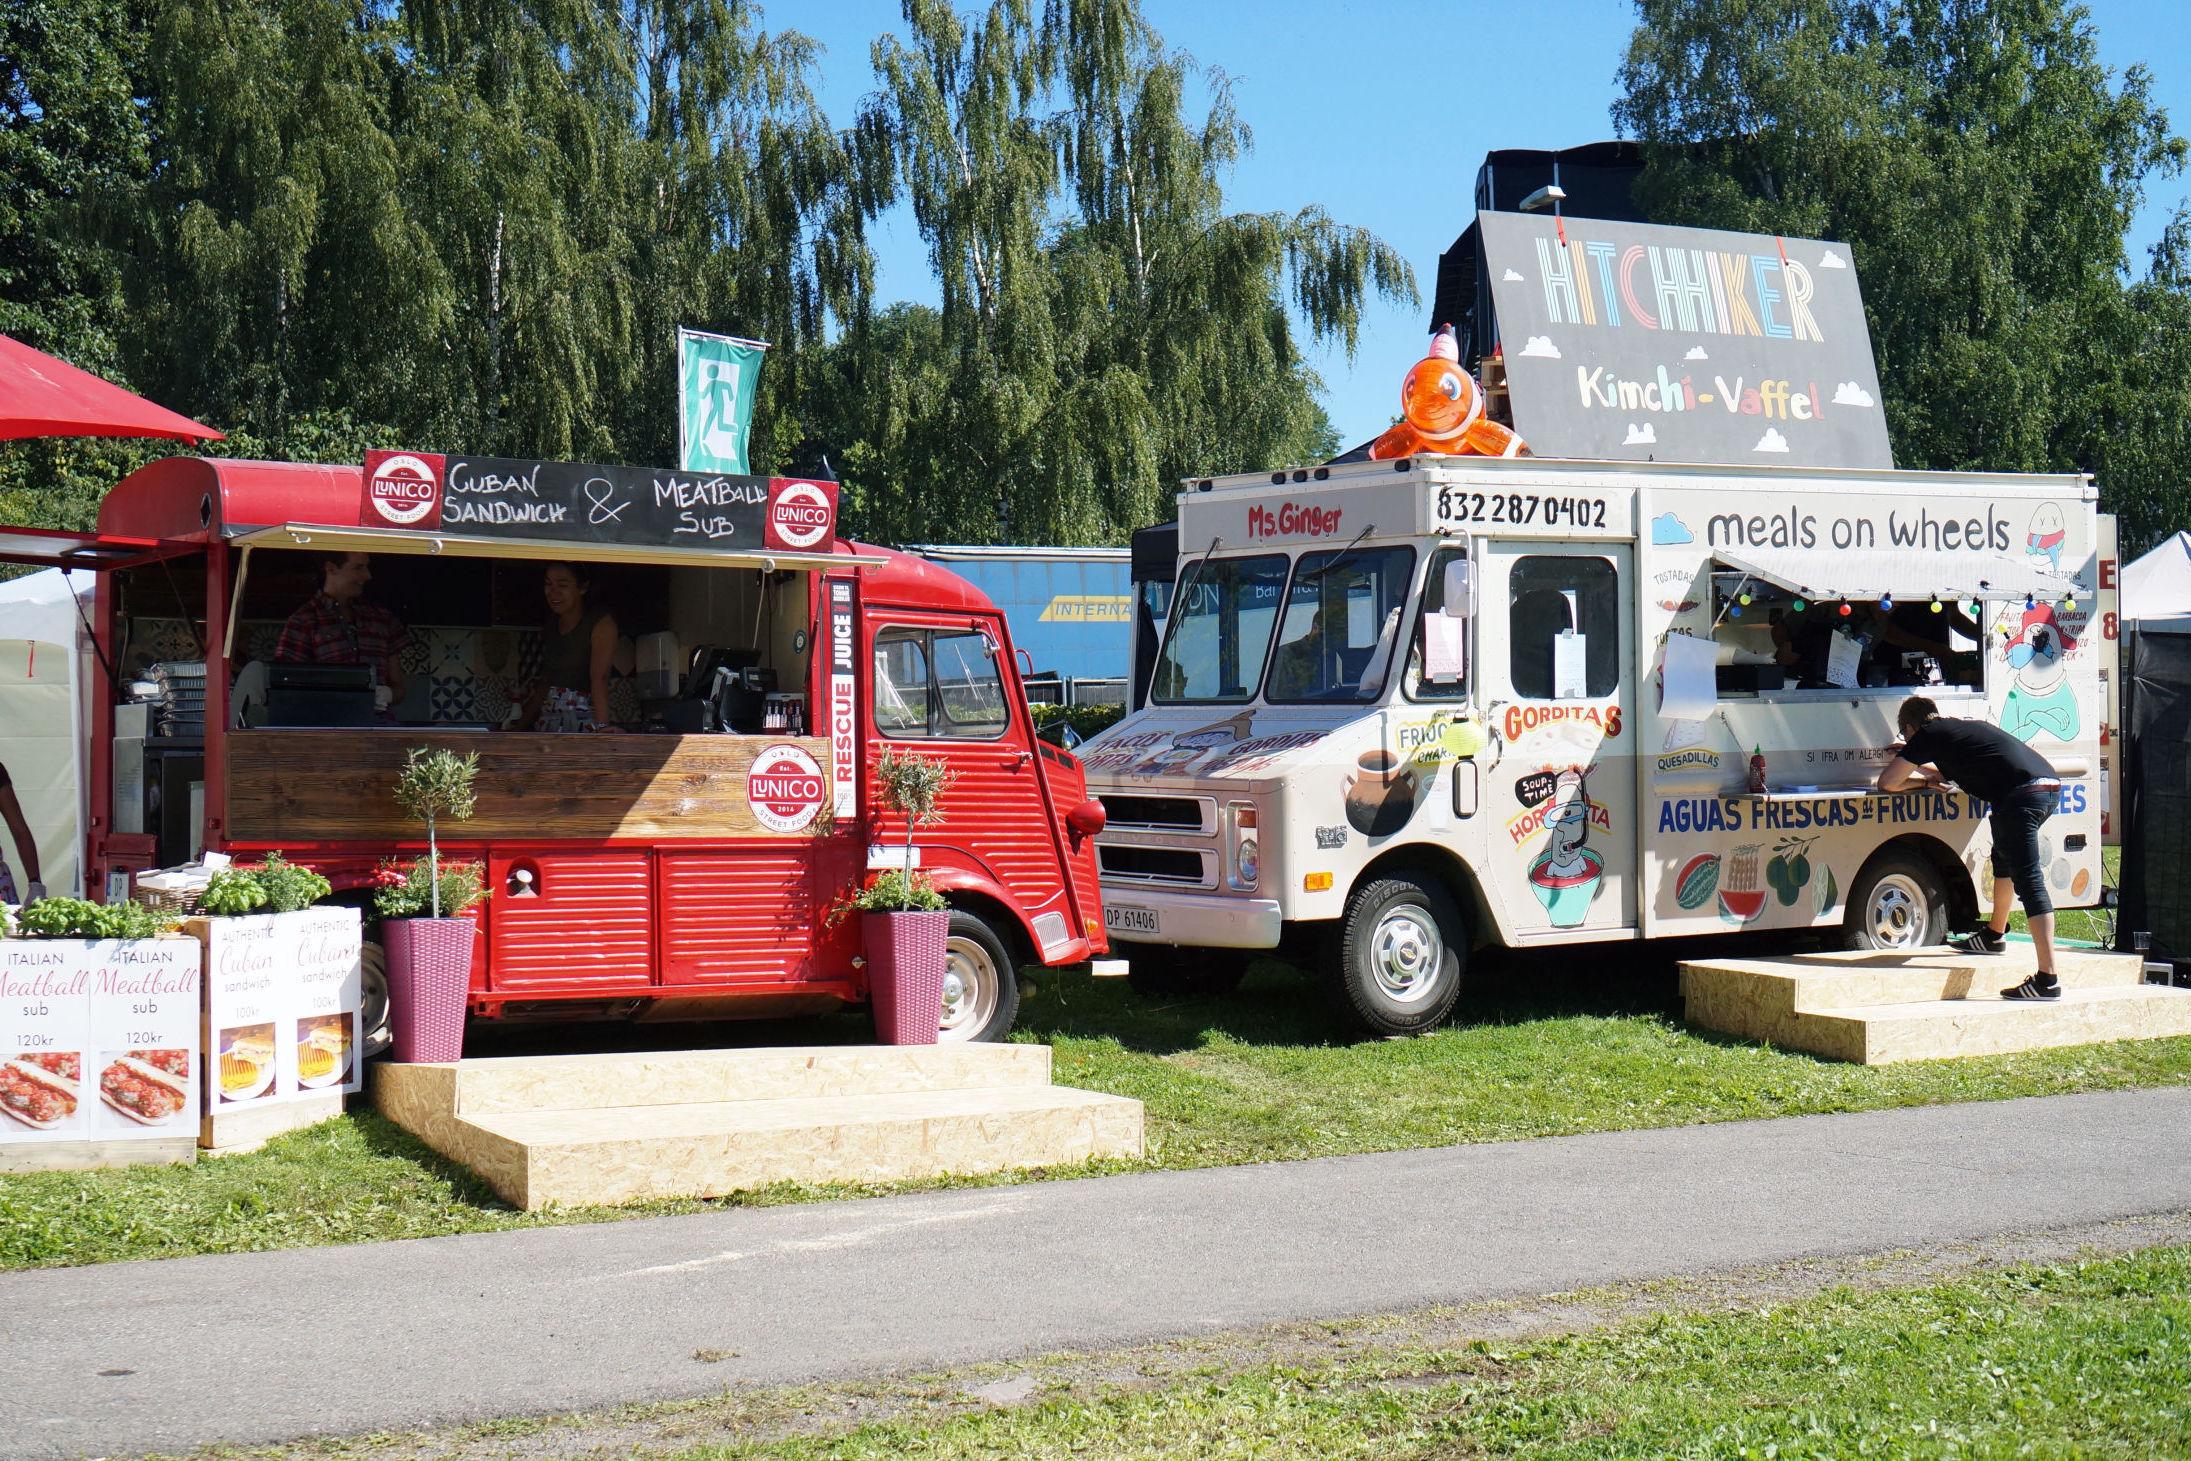 GATEMAT: Nå serveres det endelig mat fra food trucks også i Norge. Foto: Maria Tveiten Helgeby/VG